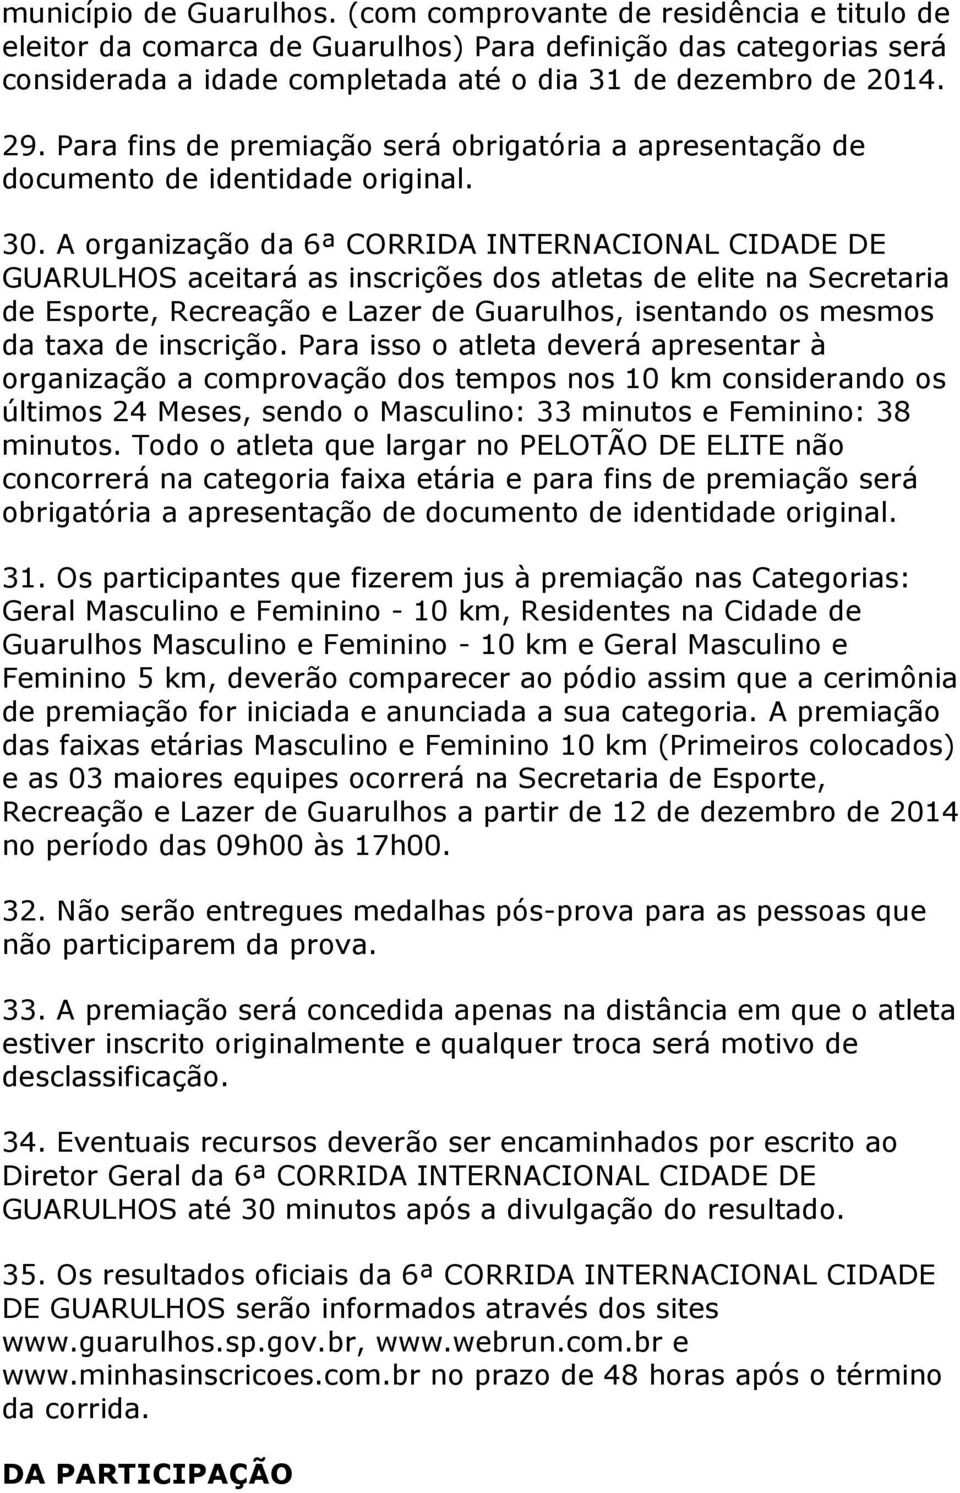 A organização da 6ª CORRIDA INTERNACIONAL CIDADE DE GUARULHOS aceitará as inscrições dos atletas de elite na Secretaria de Esporte, Recreação e Lazer de Guarulhos, isentando os mesmos da taxa de